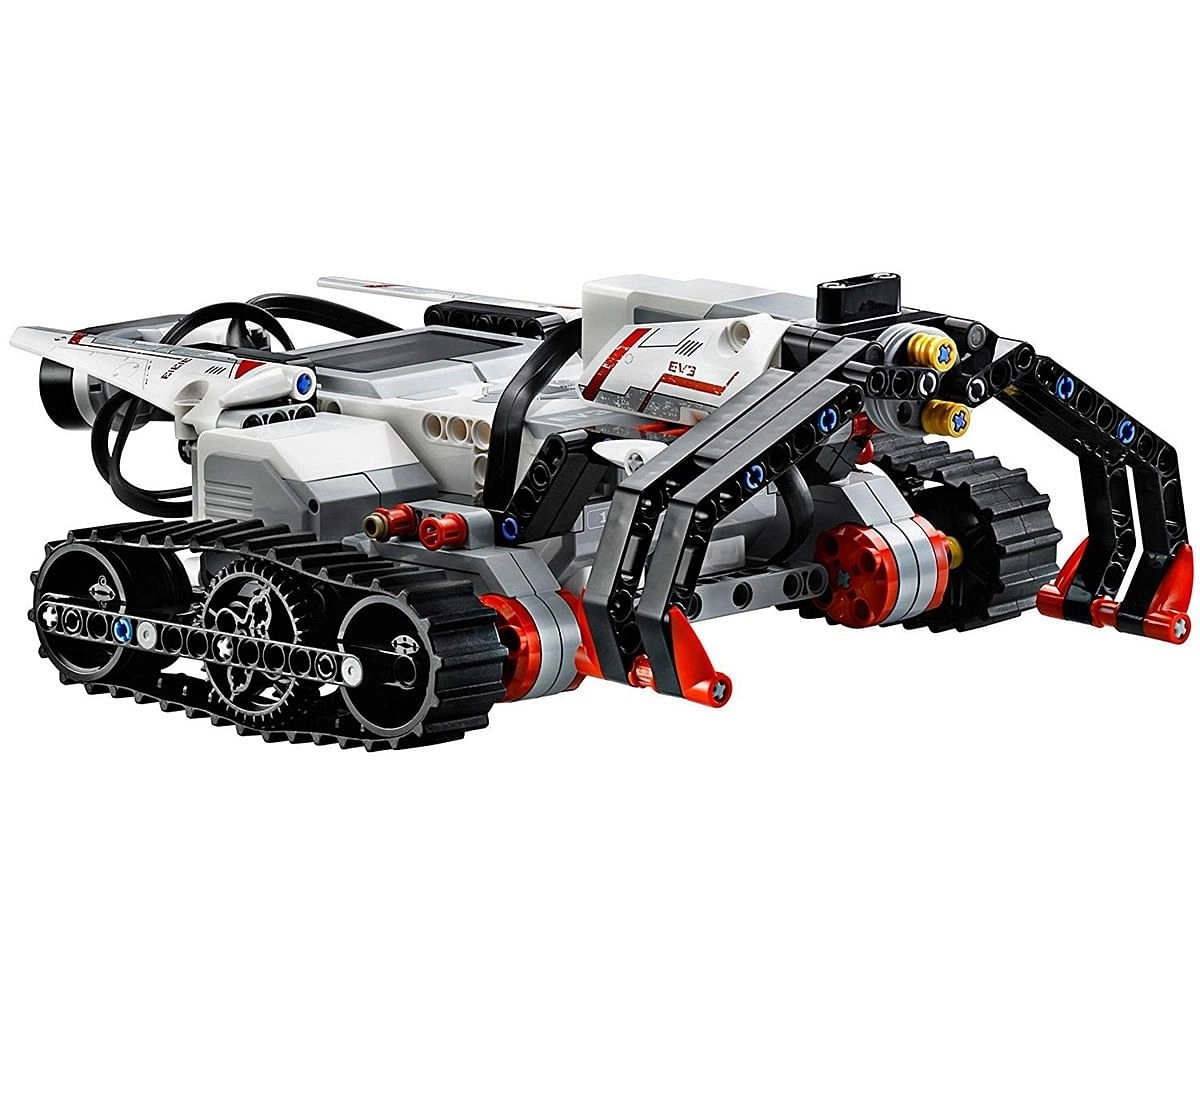 Lego Mindstorm Ev3 (601 Pcs) 31313 Blocks for Kids age 10Y+ 